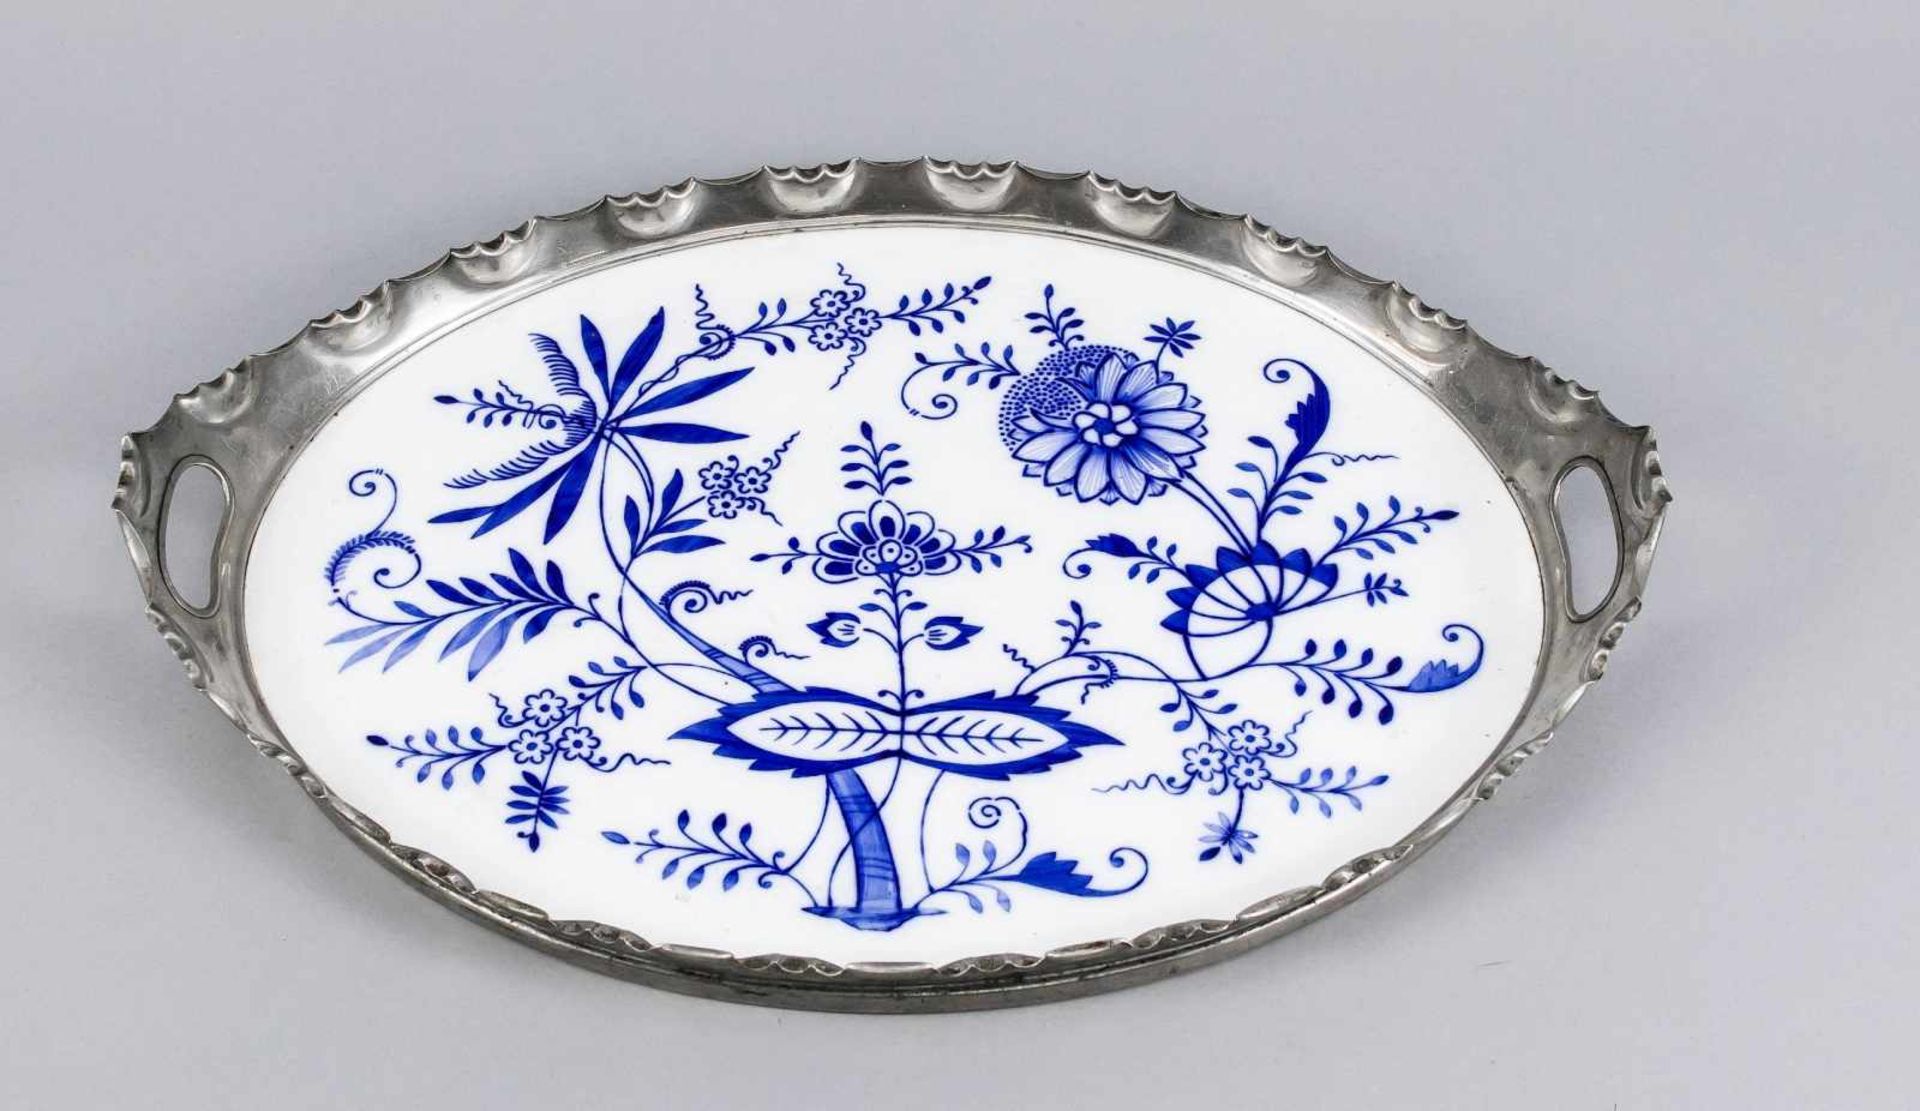 Ovales Tablett, Ende 19. Jh., Spiegel aus Porzellan mit blauer, vegetabiler Bemalung.